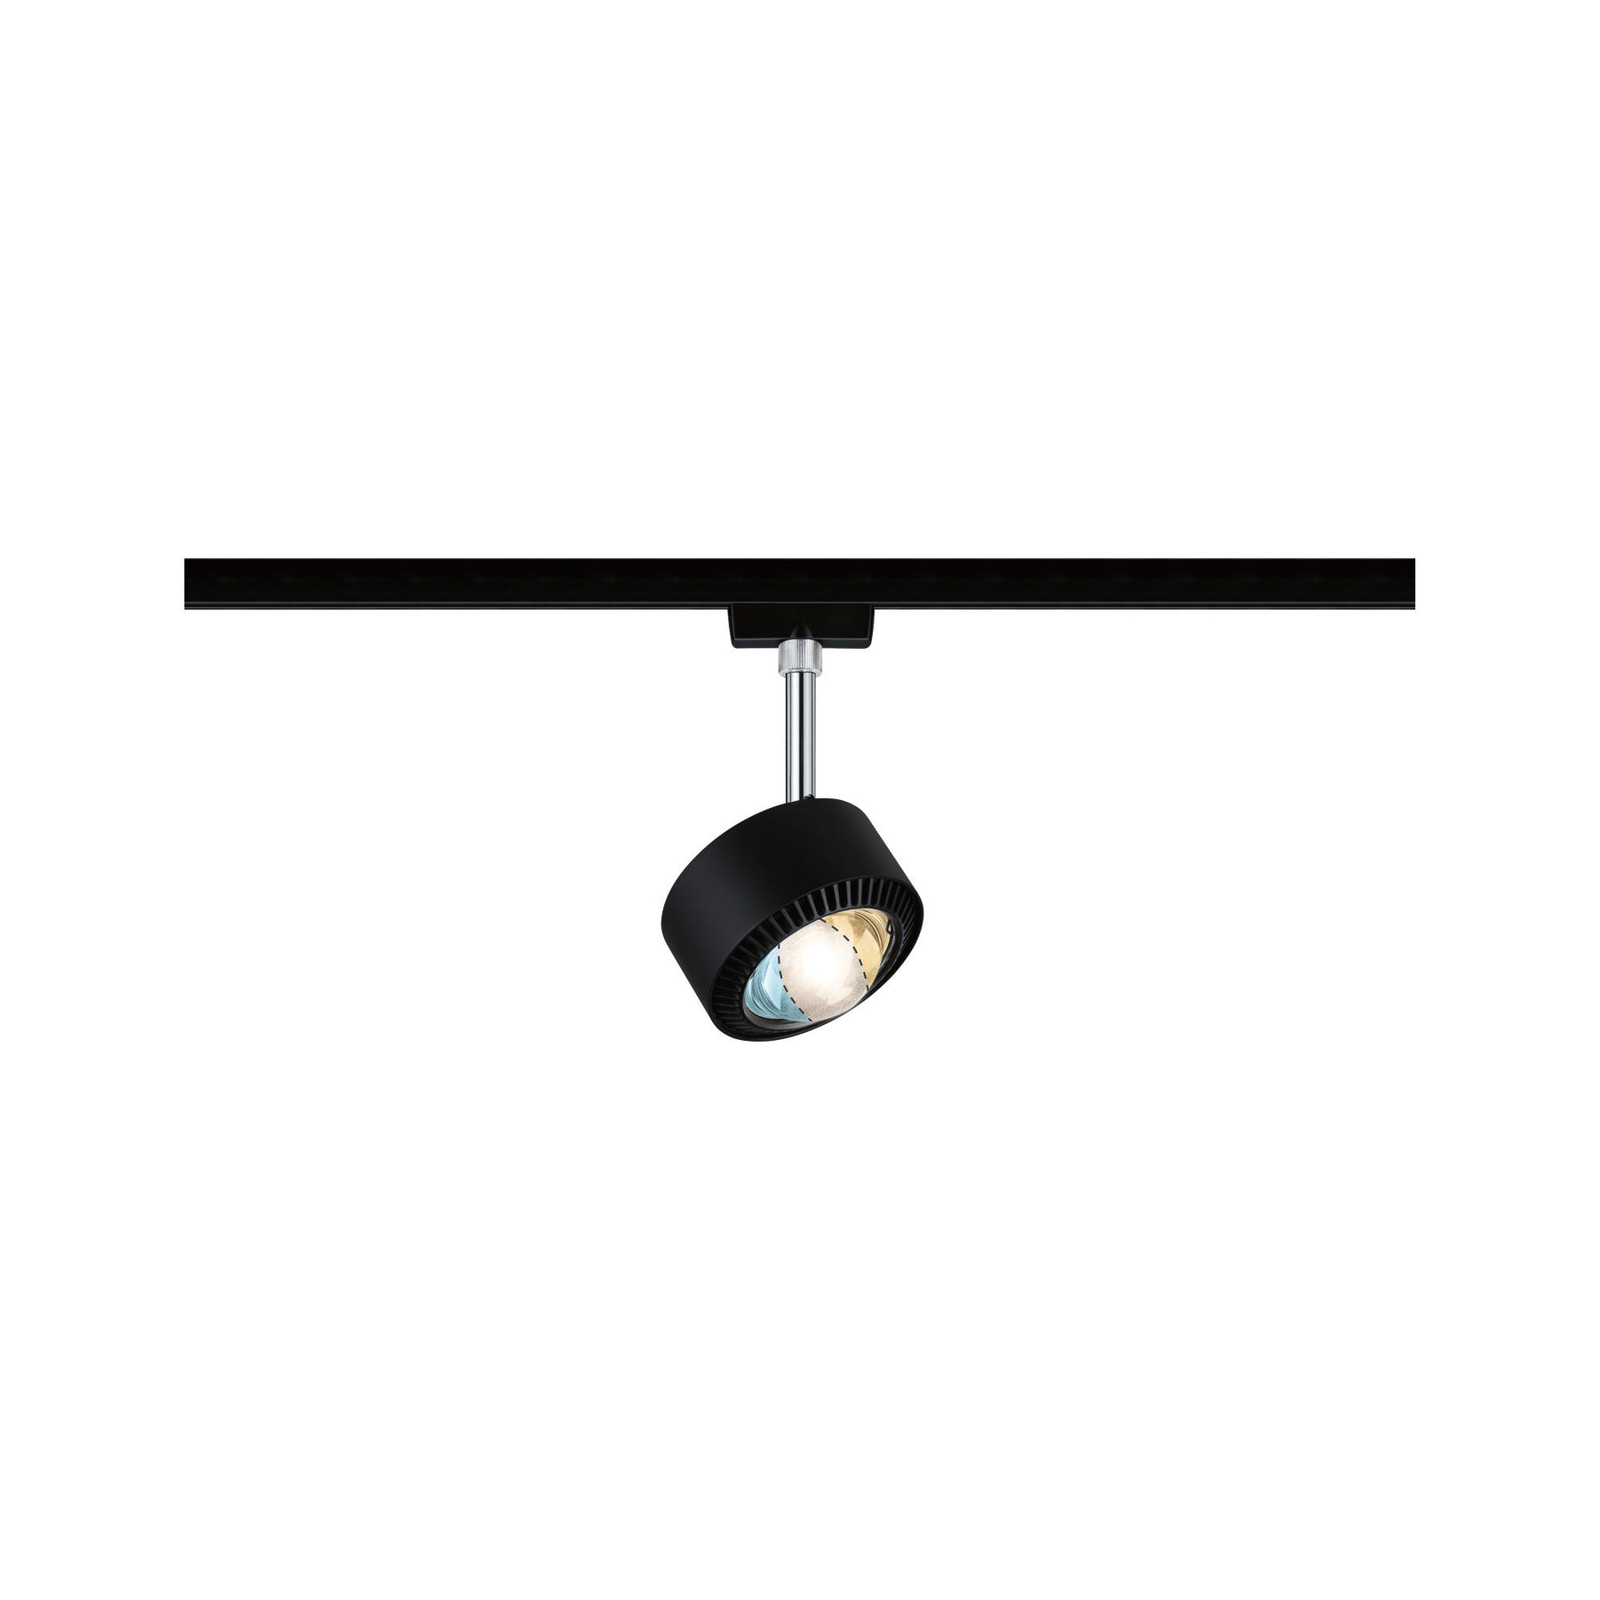 Paulmann URail Aldan spot LED, noir mat, métal, CCT